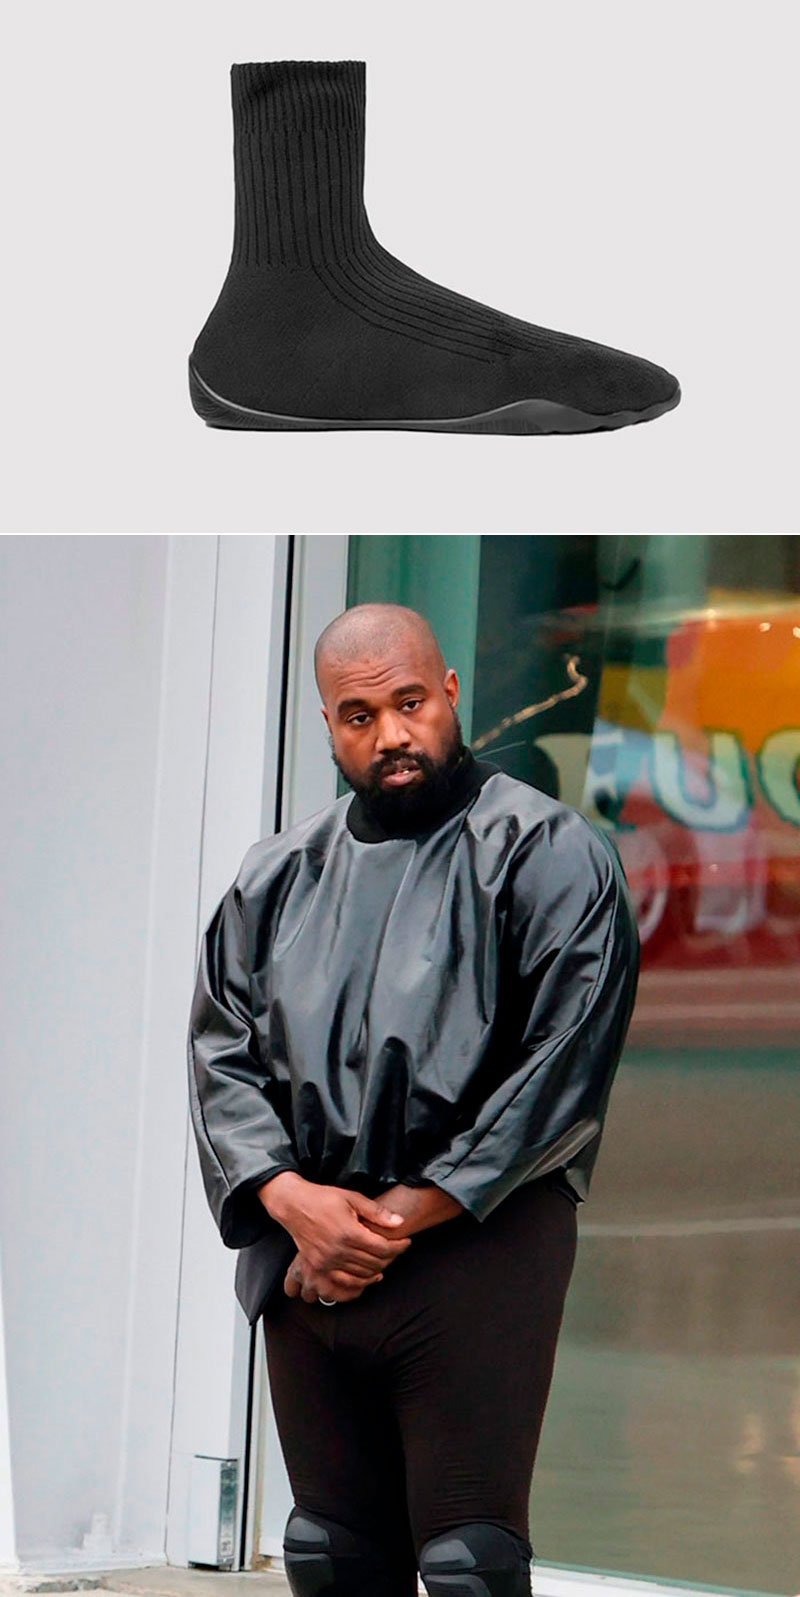 Kanye lanza sus ‘Medias – Zapatos’ de $200 dólares y la gente se burla: 7 Detalles del caso